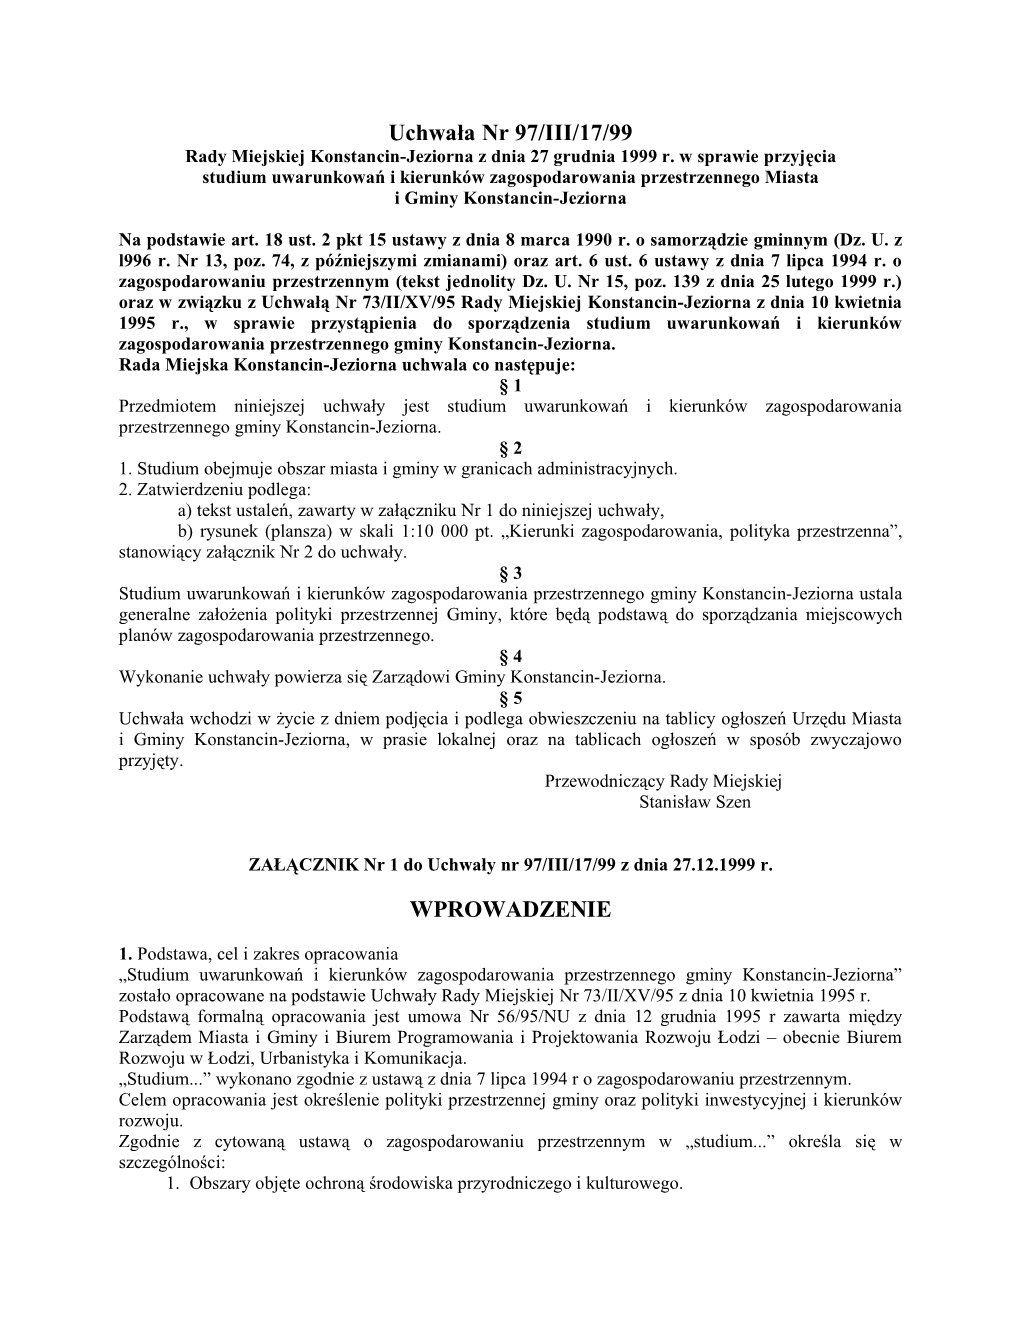 Uchwała Nr 97/III/17/99 Rady Miejskiej Konstancin-Jeziorna Z Dnia 27 Grudnia 1999 R